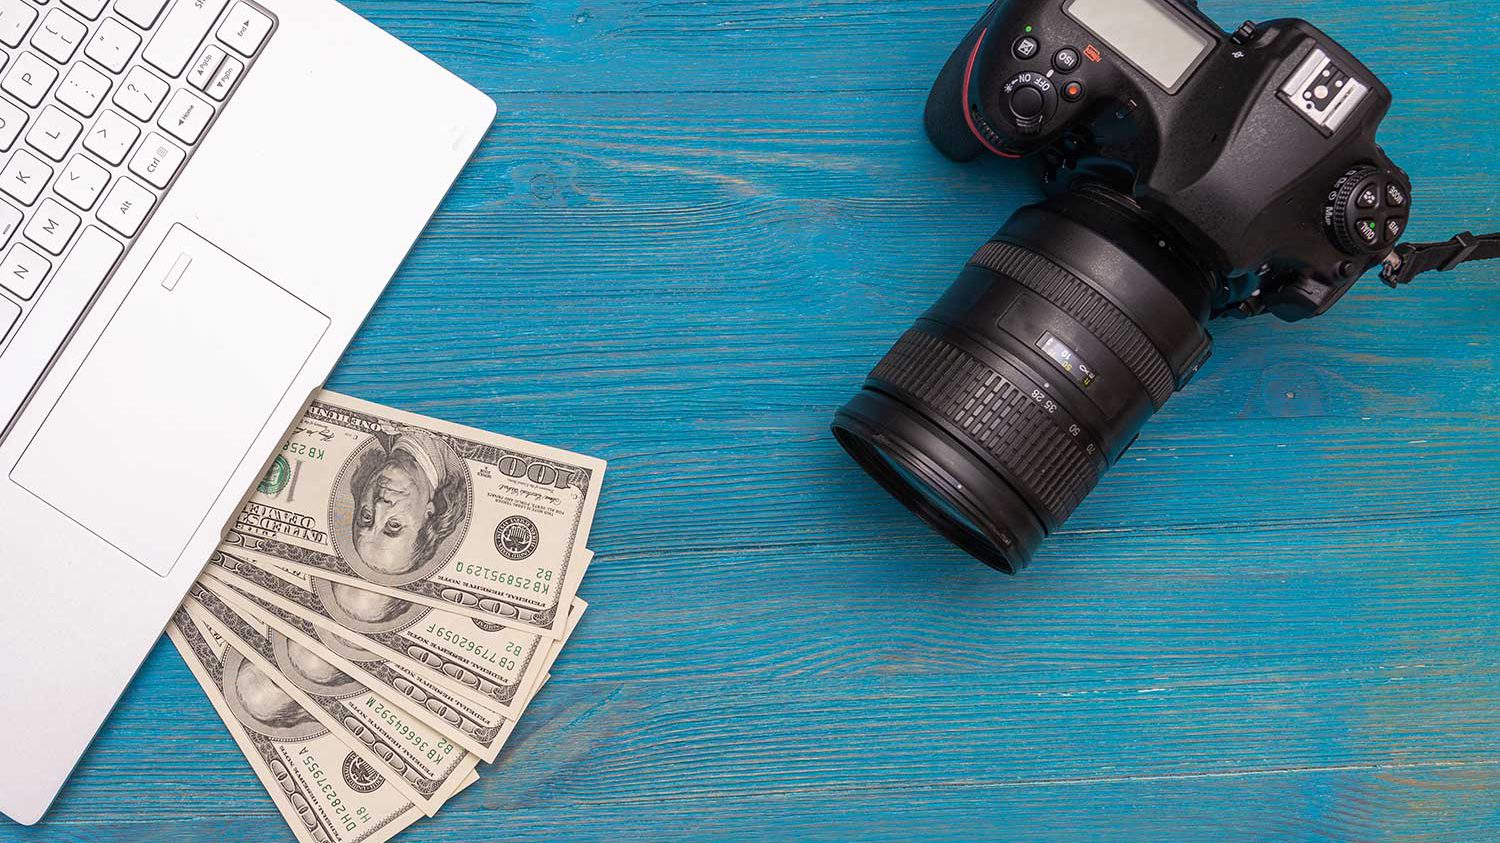 دوربین عکاسی به همراه دلار و لپ تاپ بر روی میز آبی